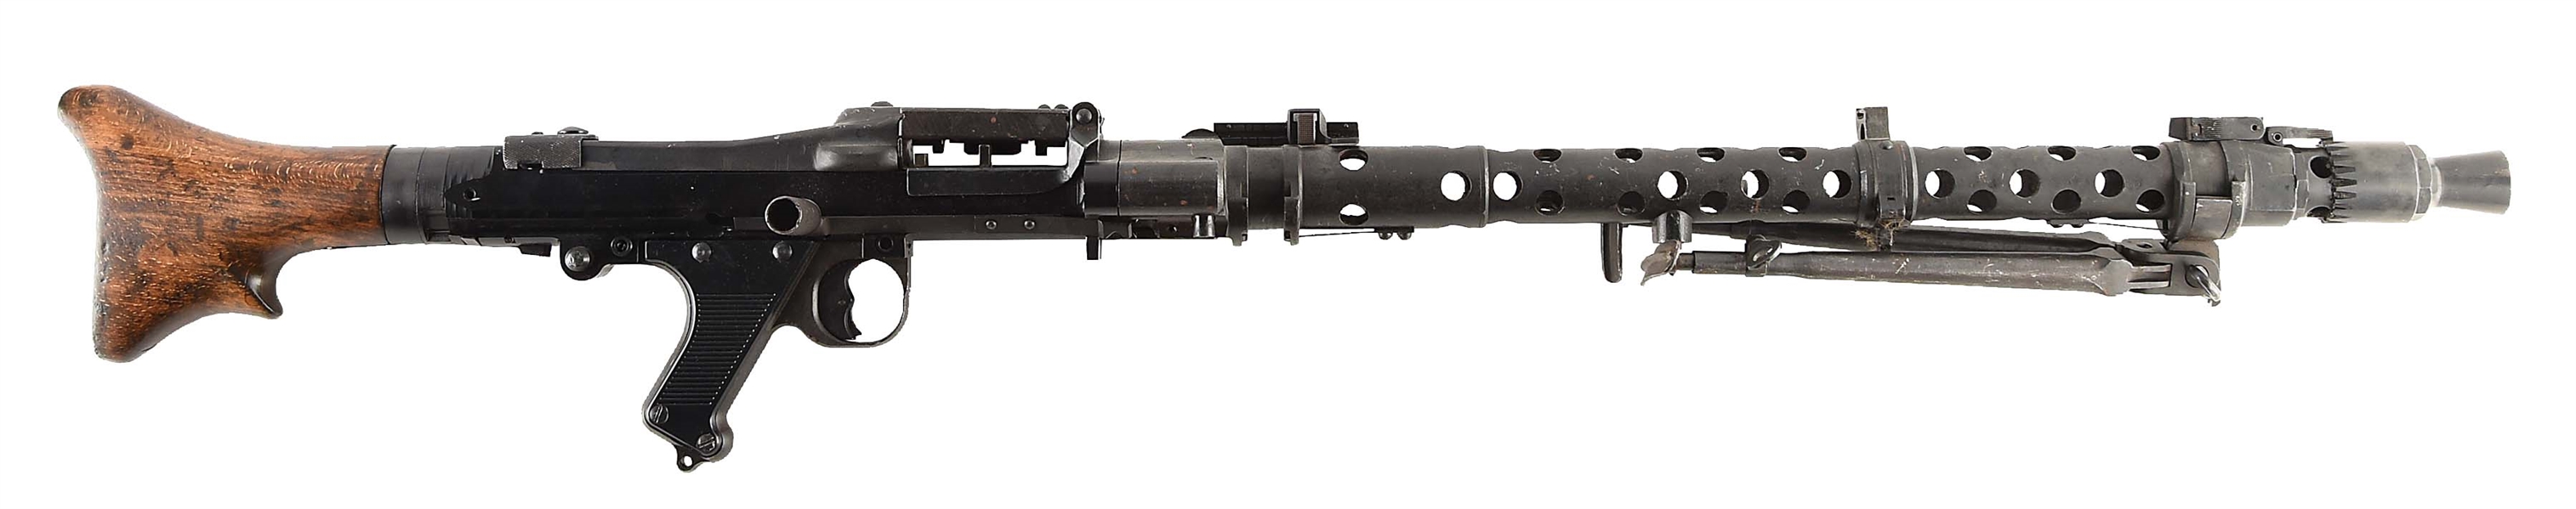 VERY FINE GERMAN WW2 MG-34 DISPLAY MACHINE GUN 